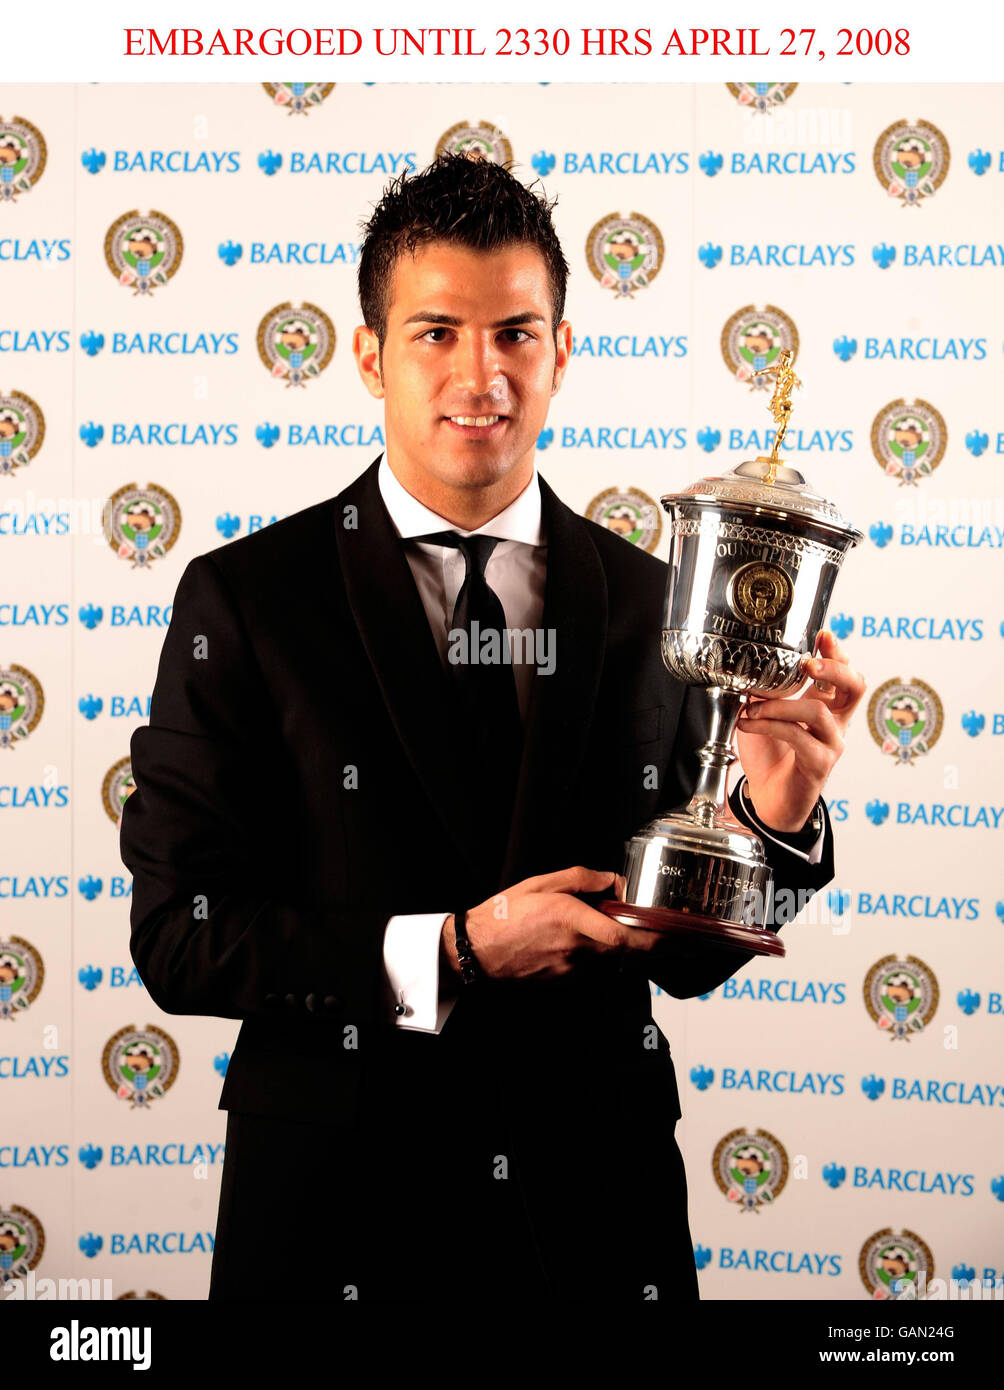 Calcio - PFA Player of the Year Awards 2008 - Grosvenor Hotel. Francesc Fabregas di Arsenal con il suo trofeo per il giovane giocatore dell'anno 2008. Foto Stock